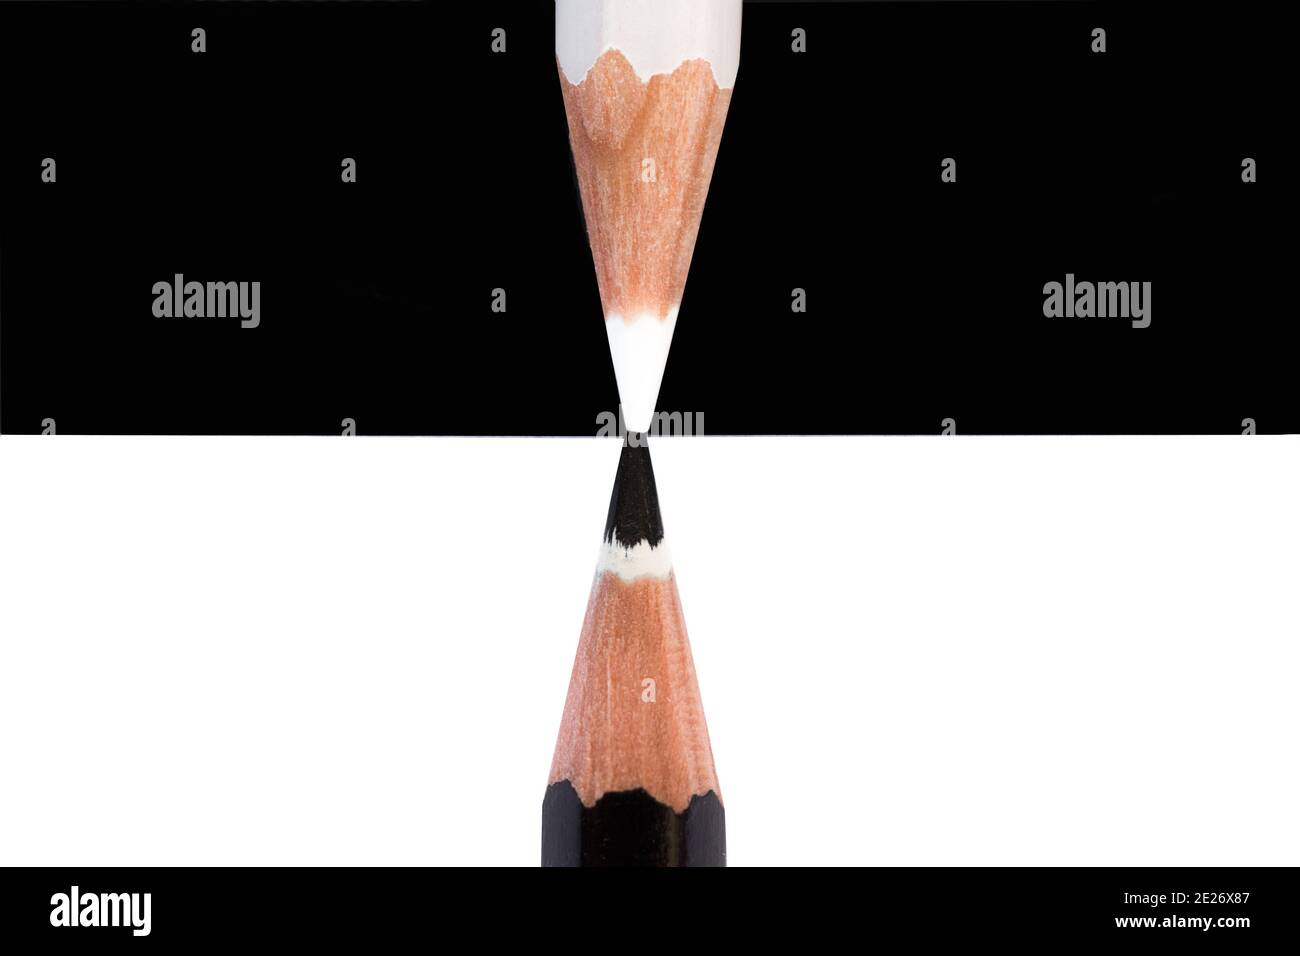 Bleistifte schwarz und weiß auf gegenüberliegenden Hintergründen, vertikale Komposition Stockfoto